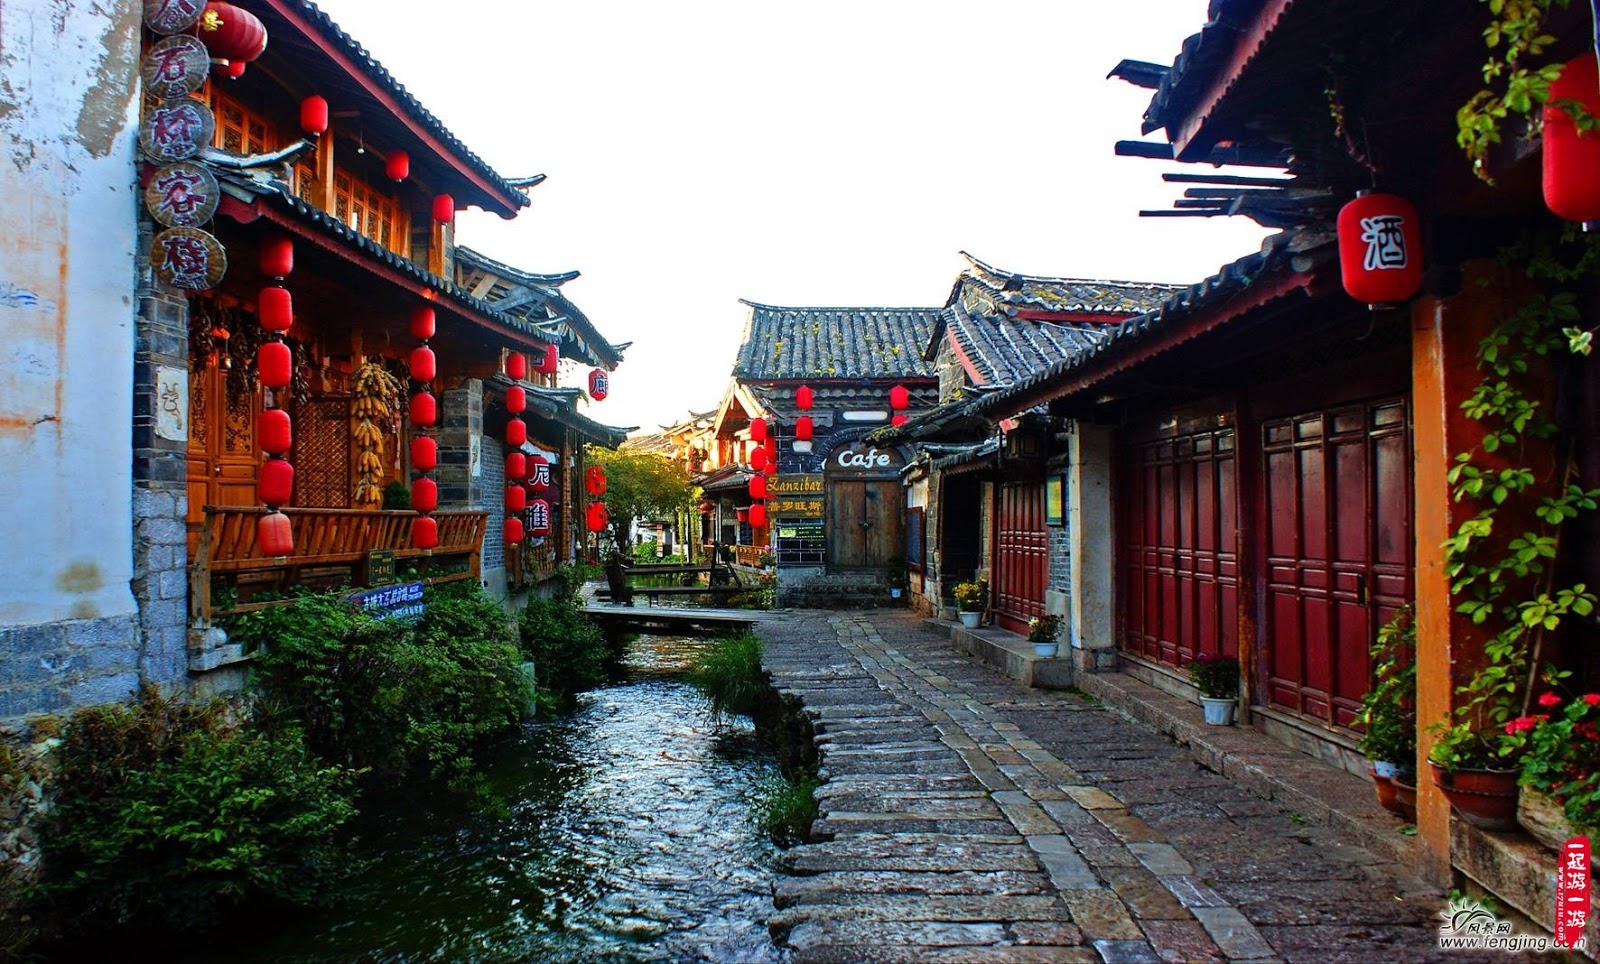 【携程攻略】丽江丽江古城景点,古色古香的古代小镇，很是喜欢、小桥流水，古城里没有什么特别的景点…